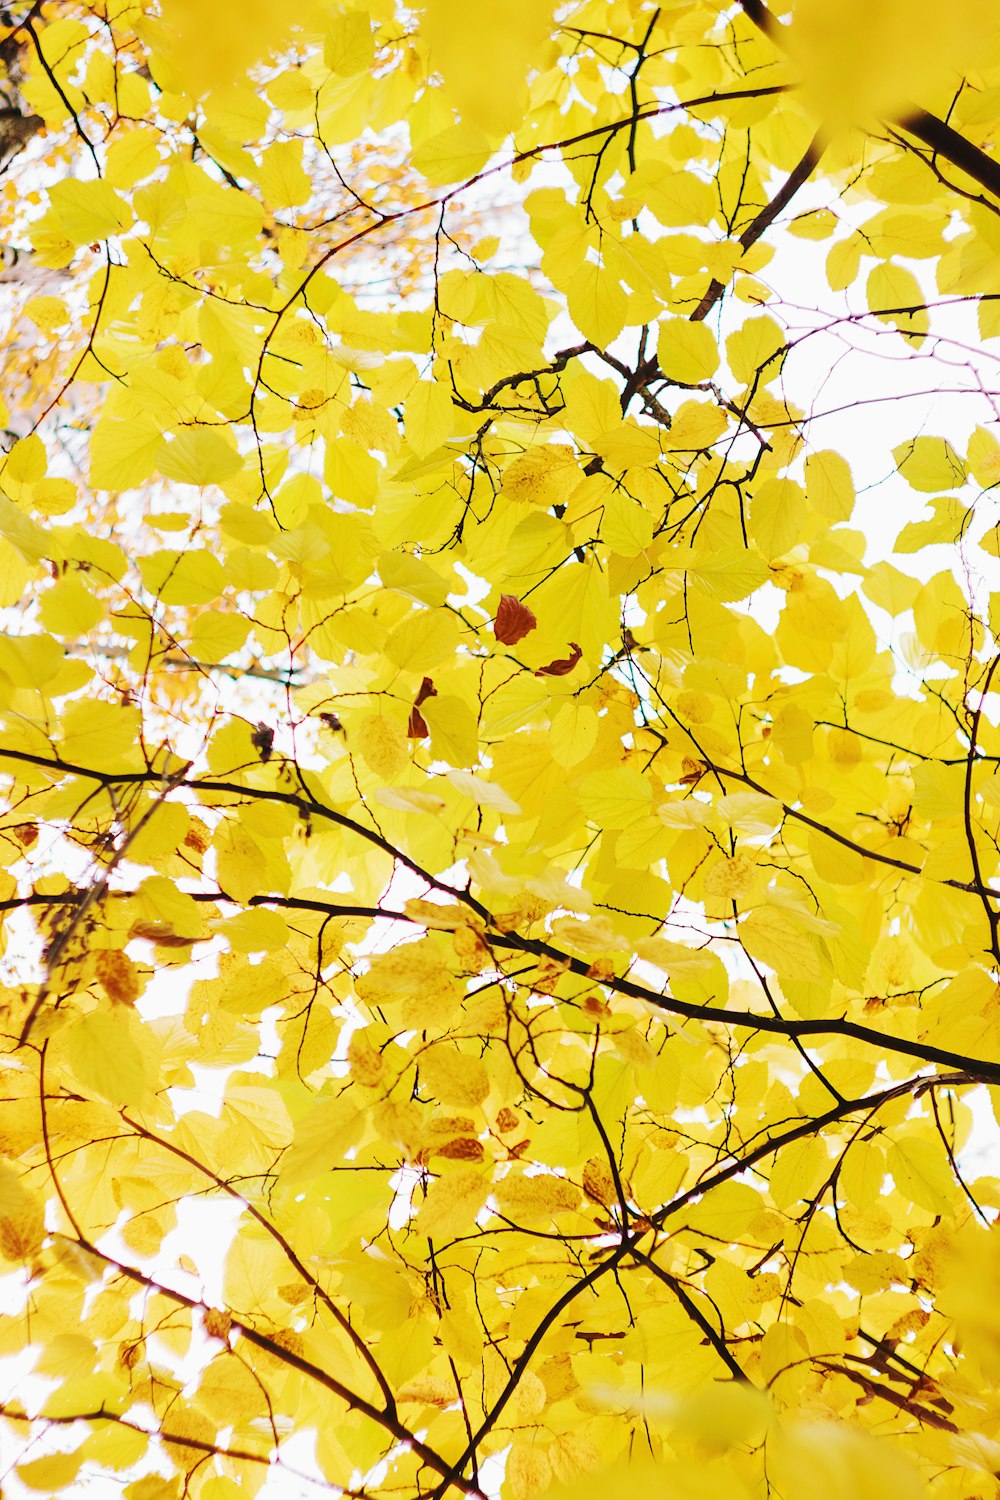 잎이 많이 달린 노란 나무